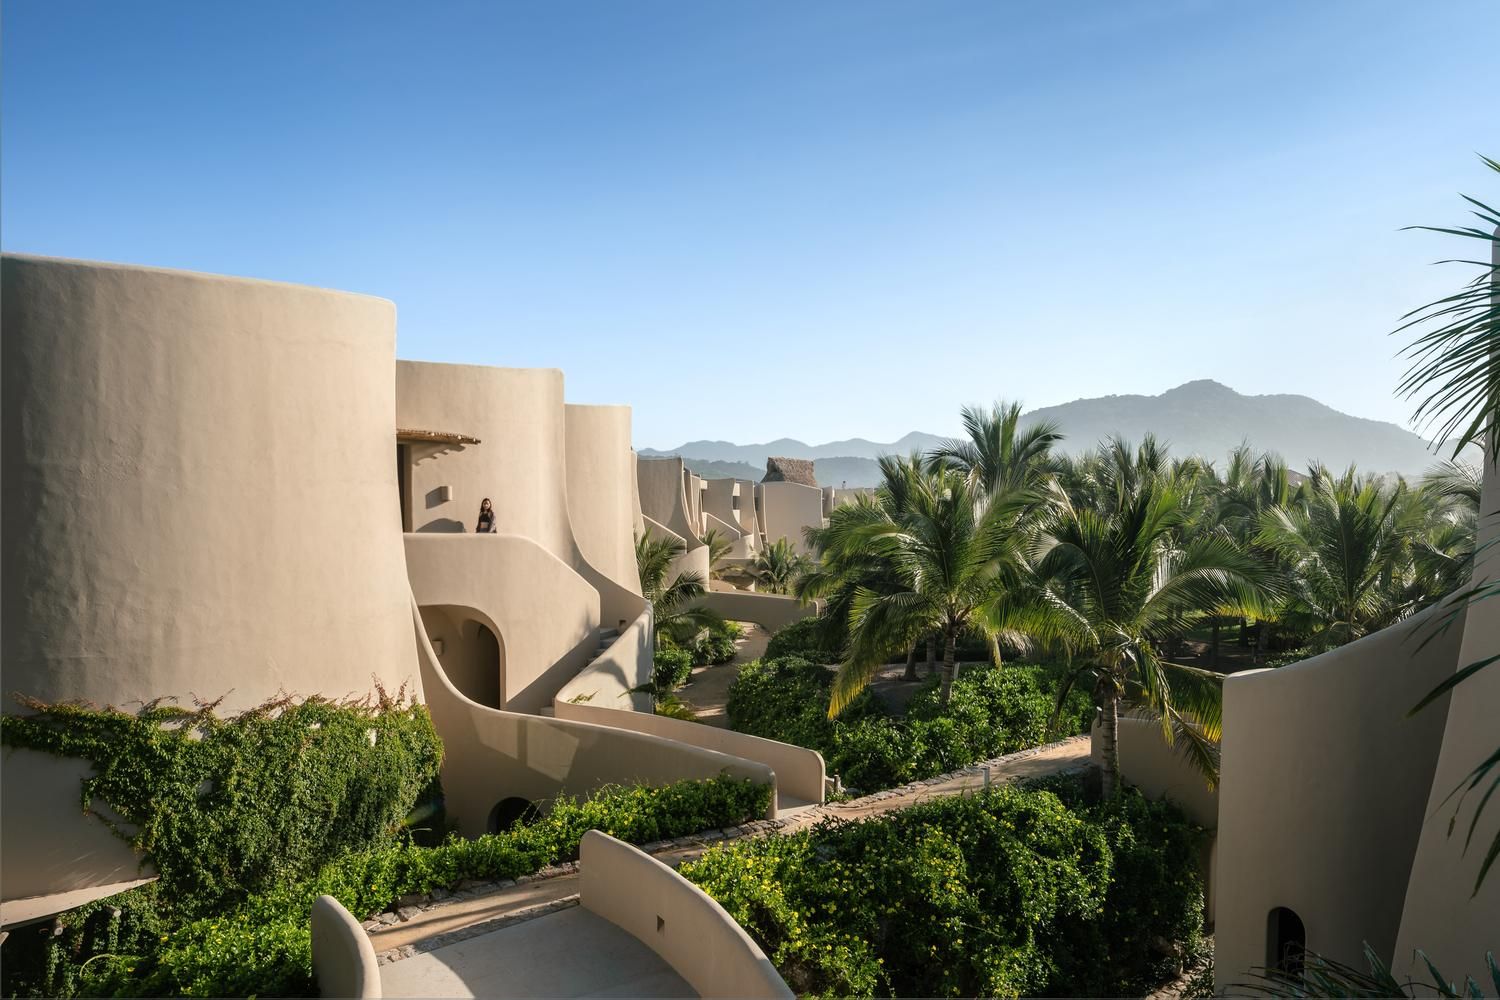 Житло поруч з Тихим океаном: новий квартирний комплекс у мексиканському пляжному селищі 